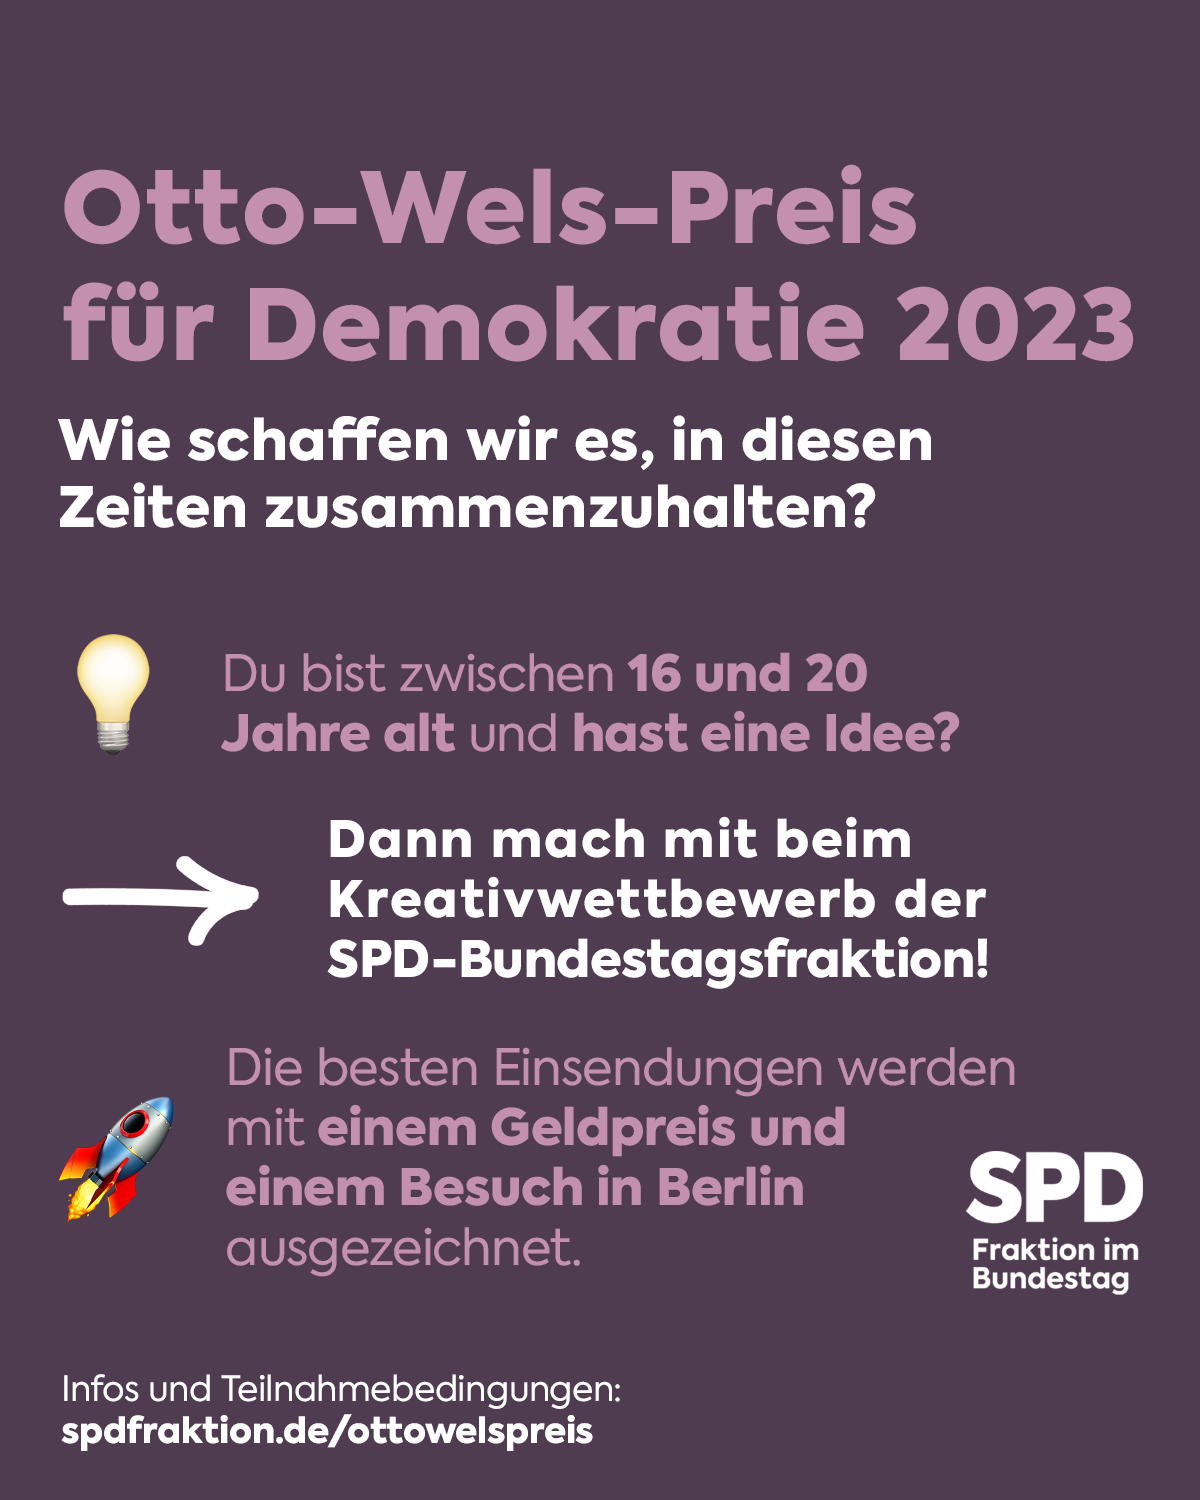 Ausschreibung “Otto-Wels-Preis für Demokratie 2023”